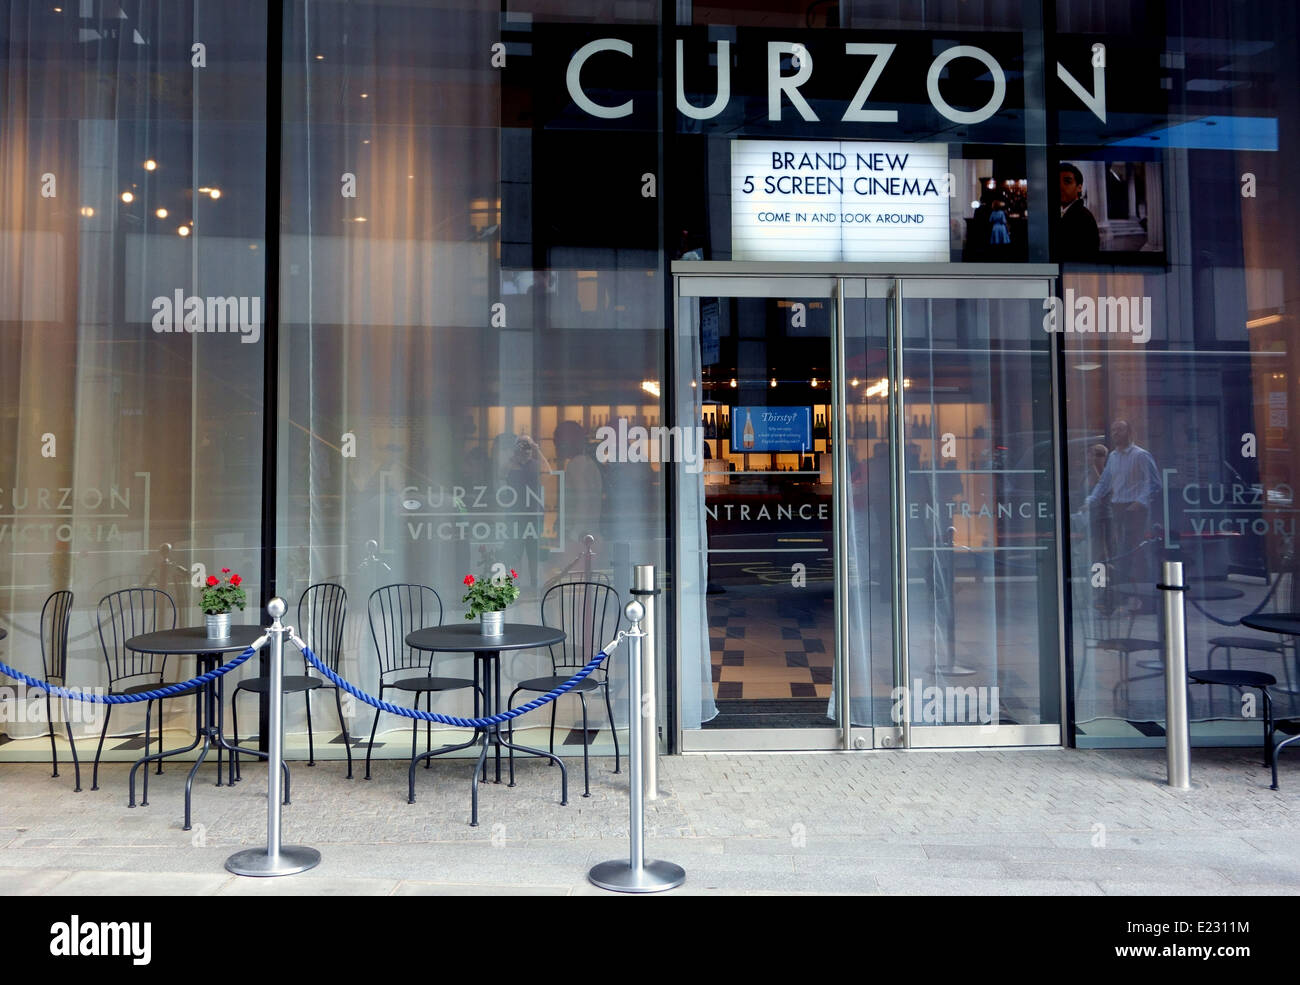 New Curzon Victoria 5 screen cinema, Victoria, London Stock Photo